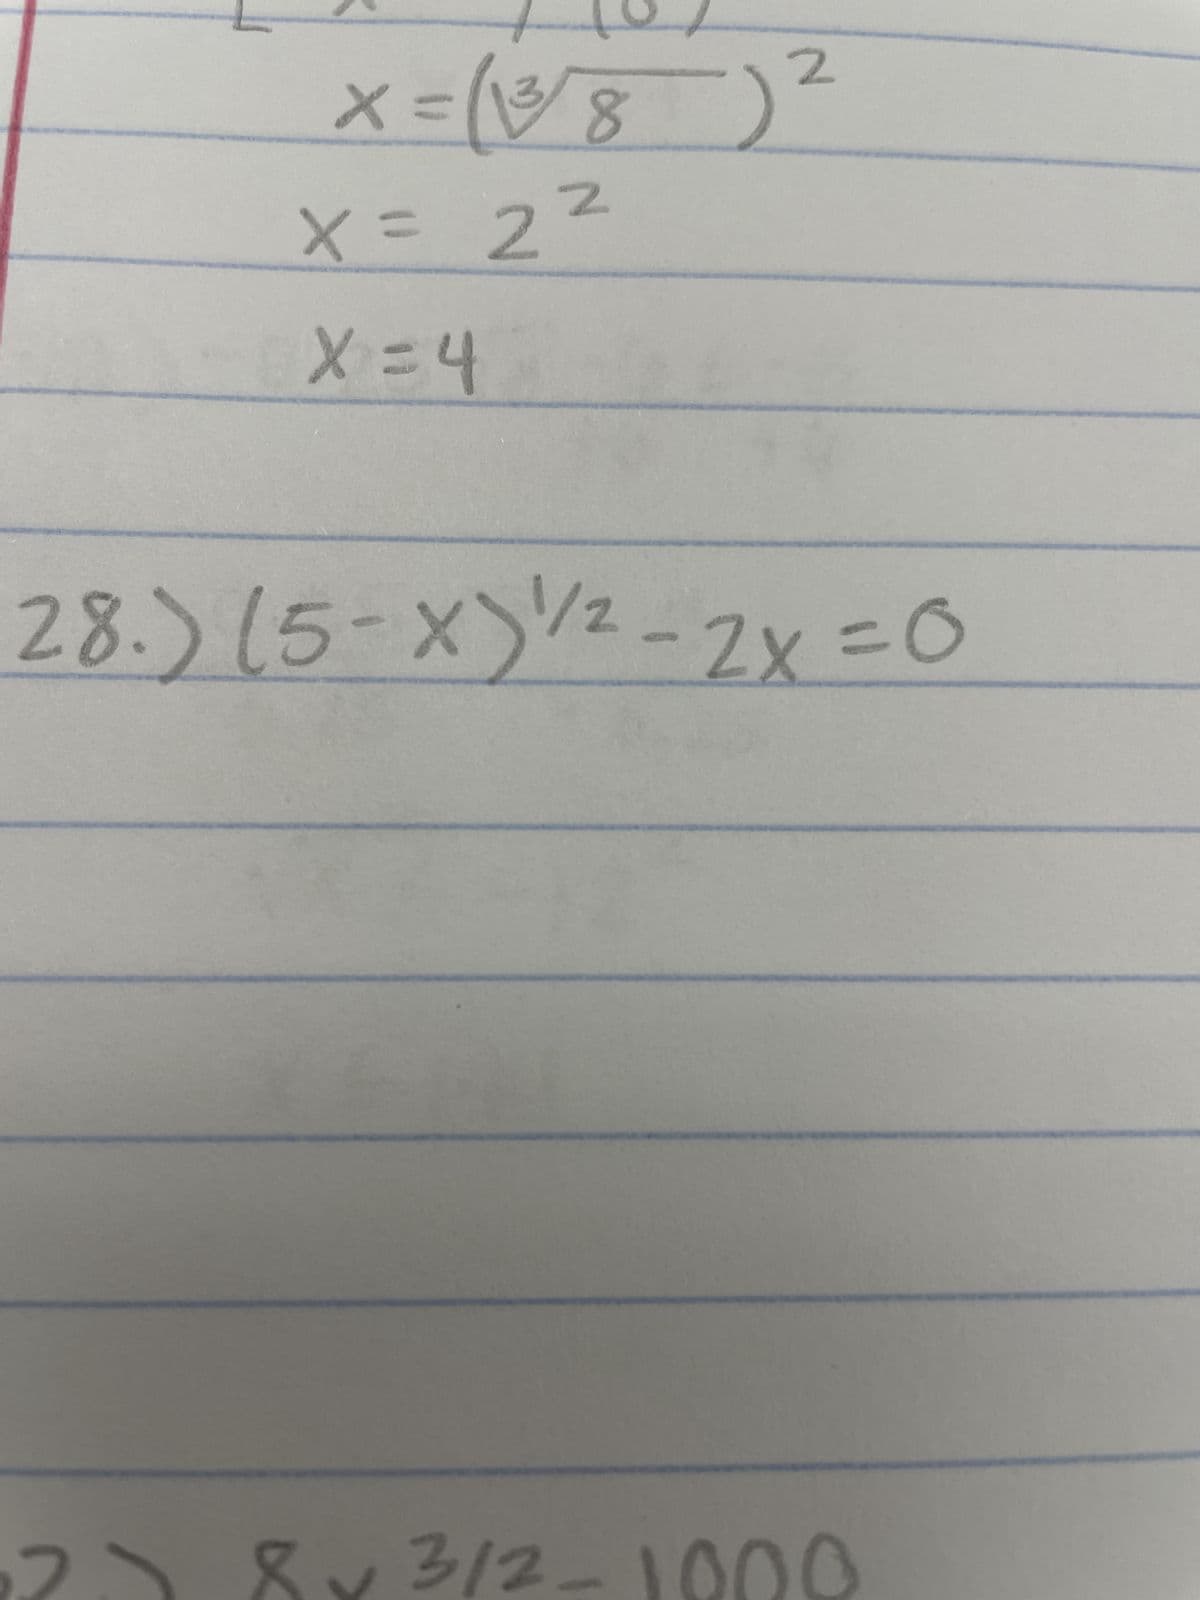 =X
₂8A)=x
X = 2²
X=4
28.) (5-X)/²-2x = 0
3
0001-2/4 ^8